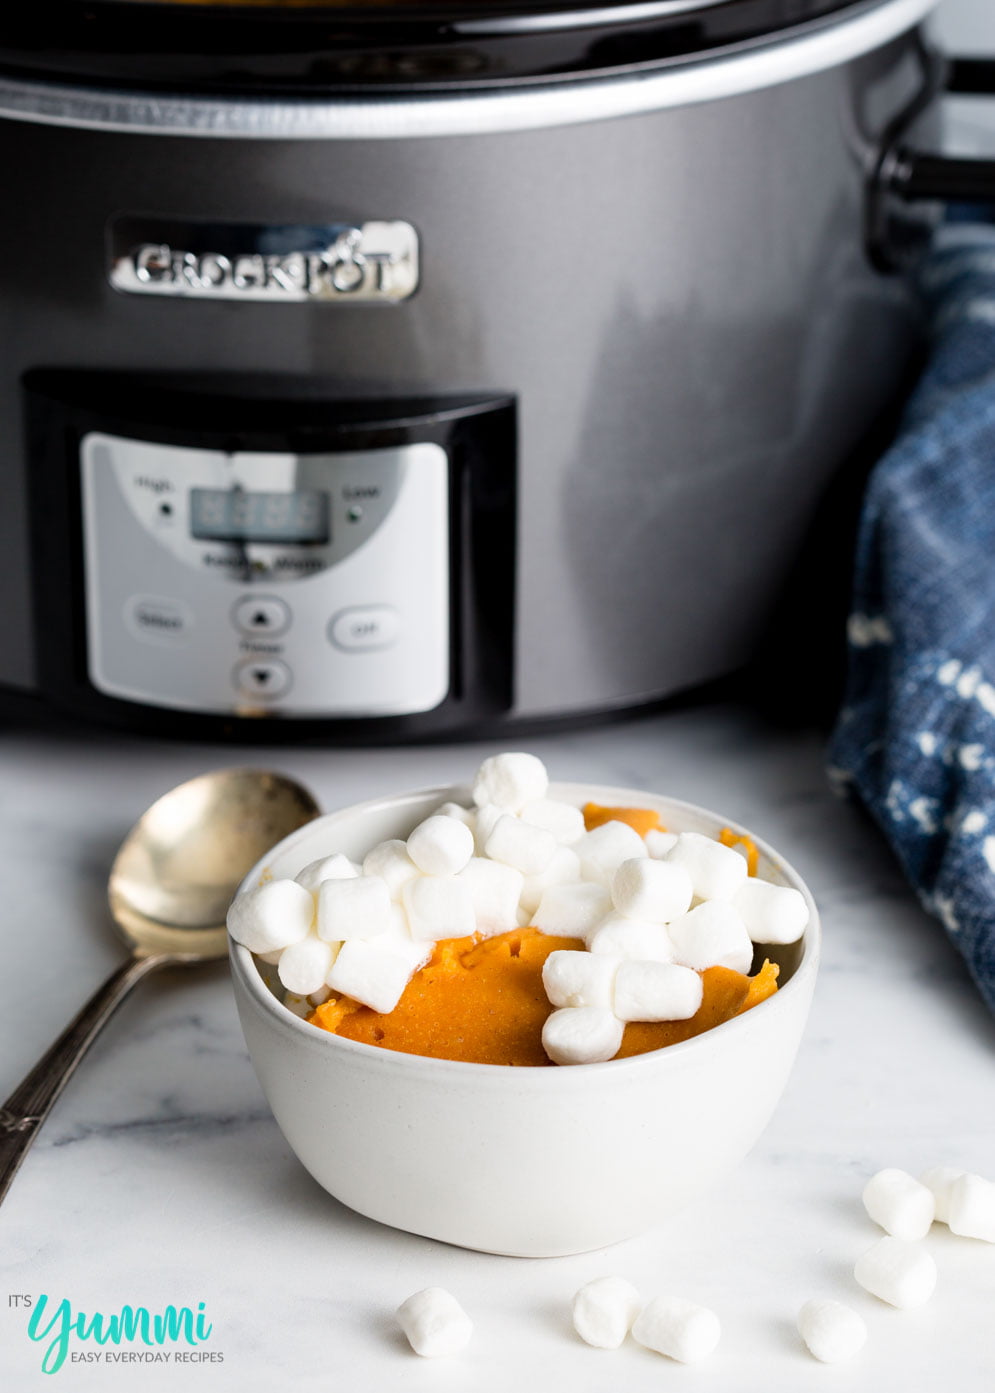 Crustless Pumpkin Pie | Slow Cooker Recipe | Easy Recipes by It's Yummi